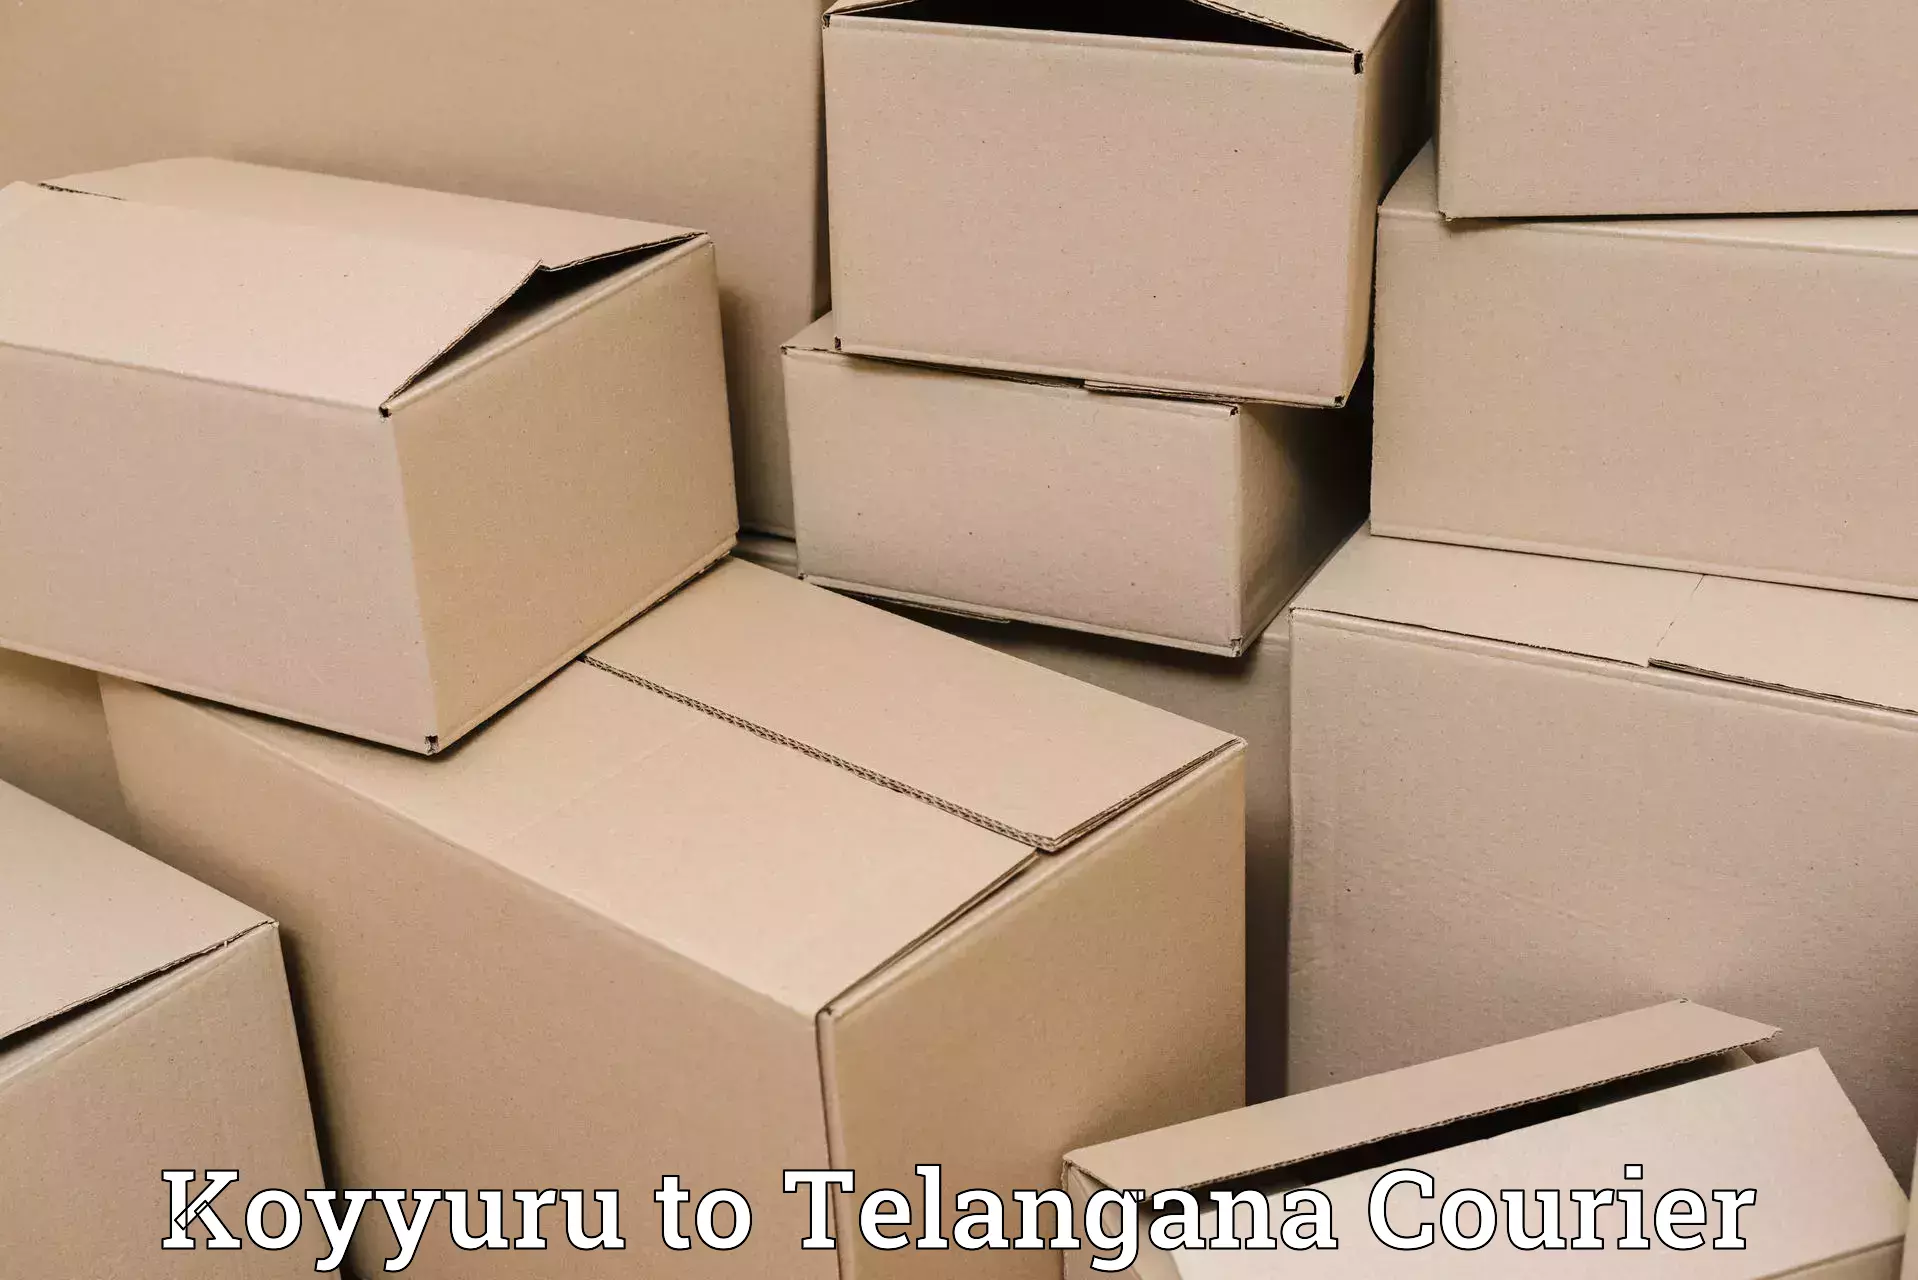 Package tracking in Koyyuru to Karimnagar